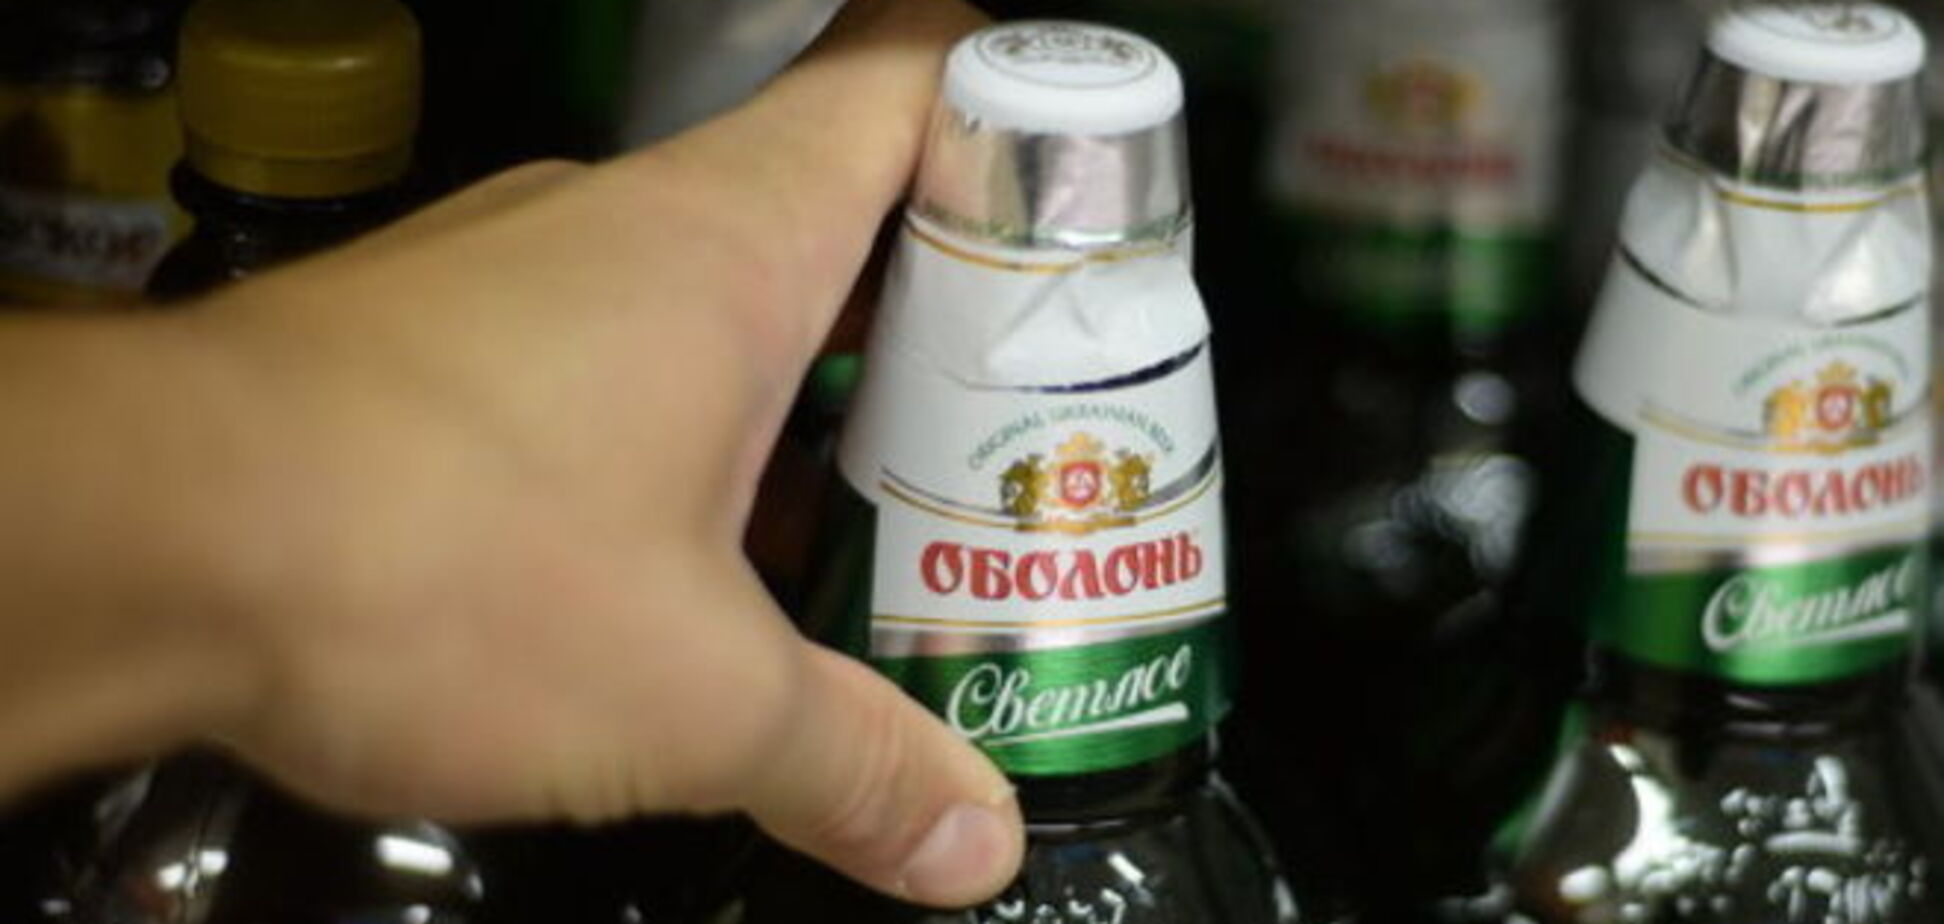 Обошли запреты: украинское пиво вновь завоевало рынки России